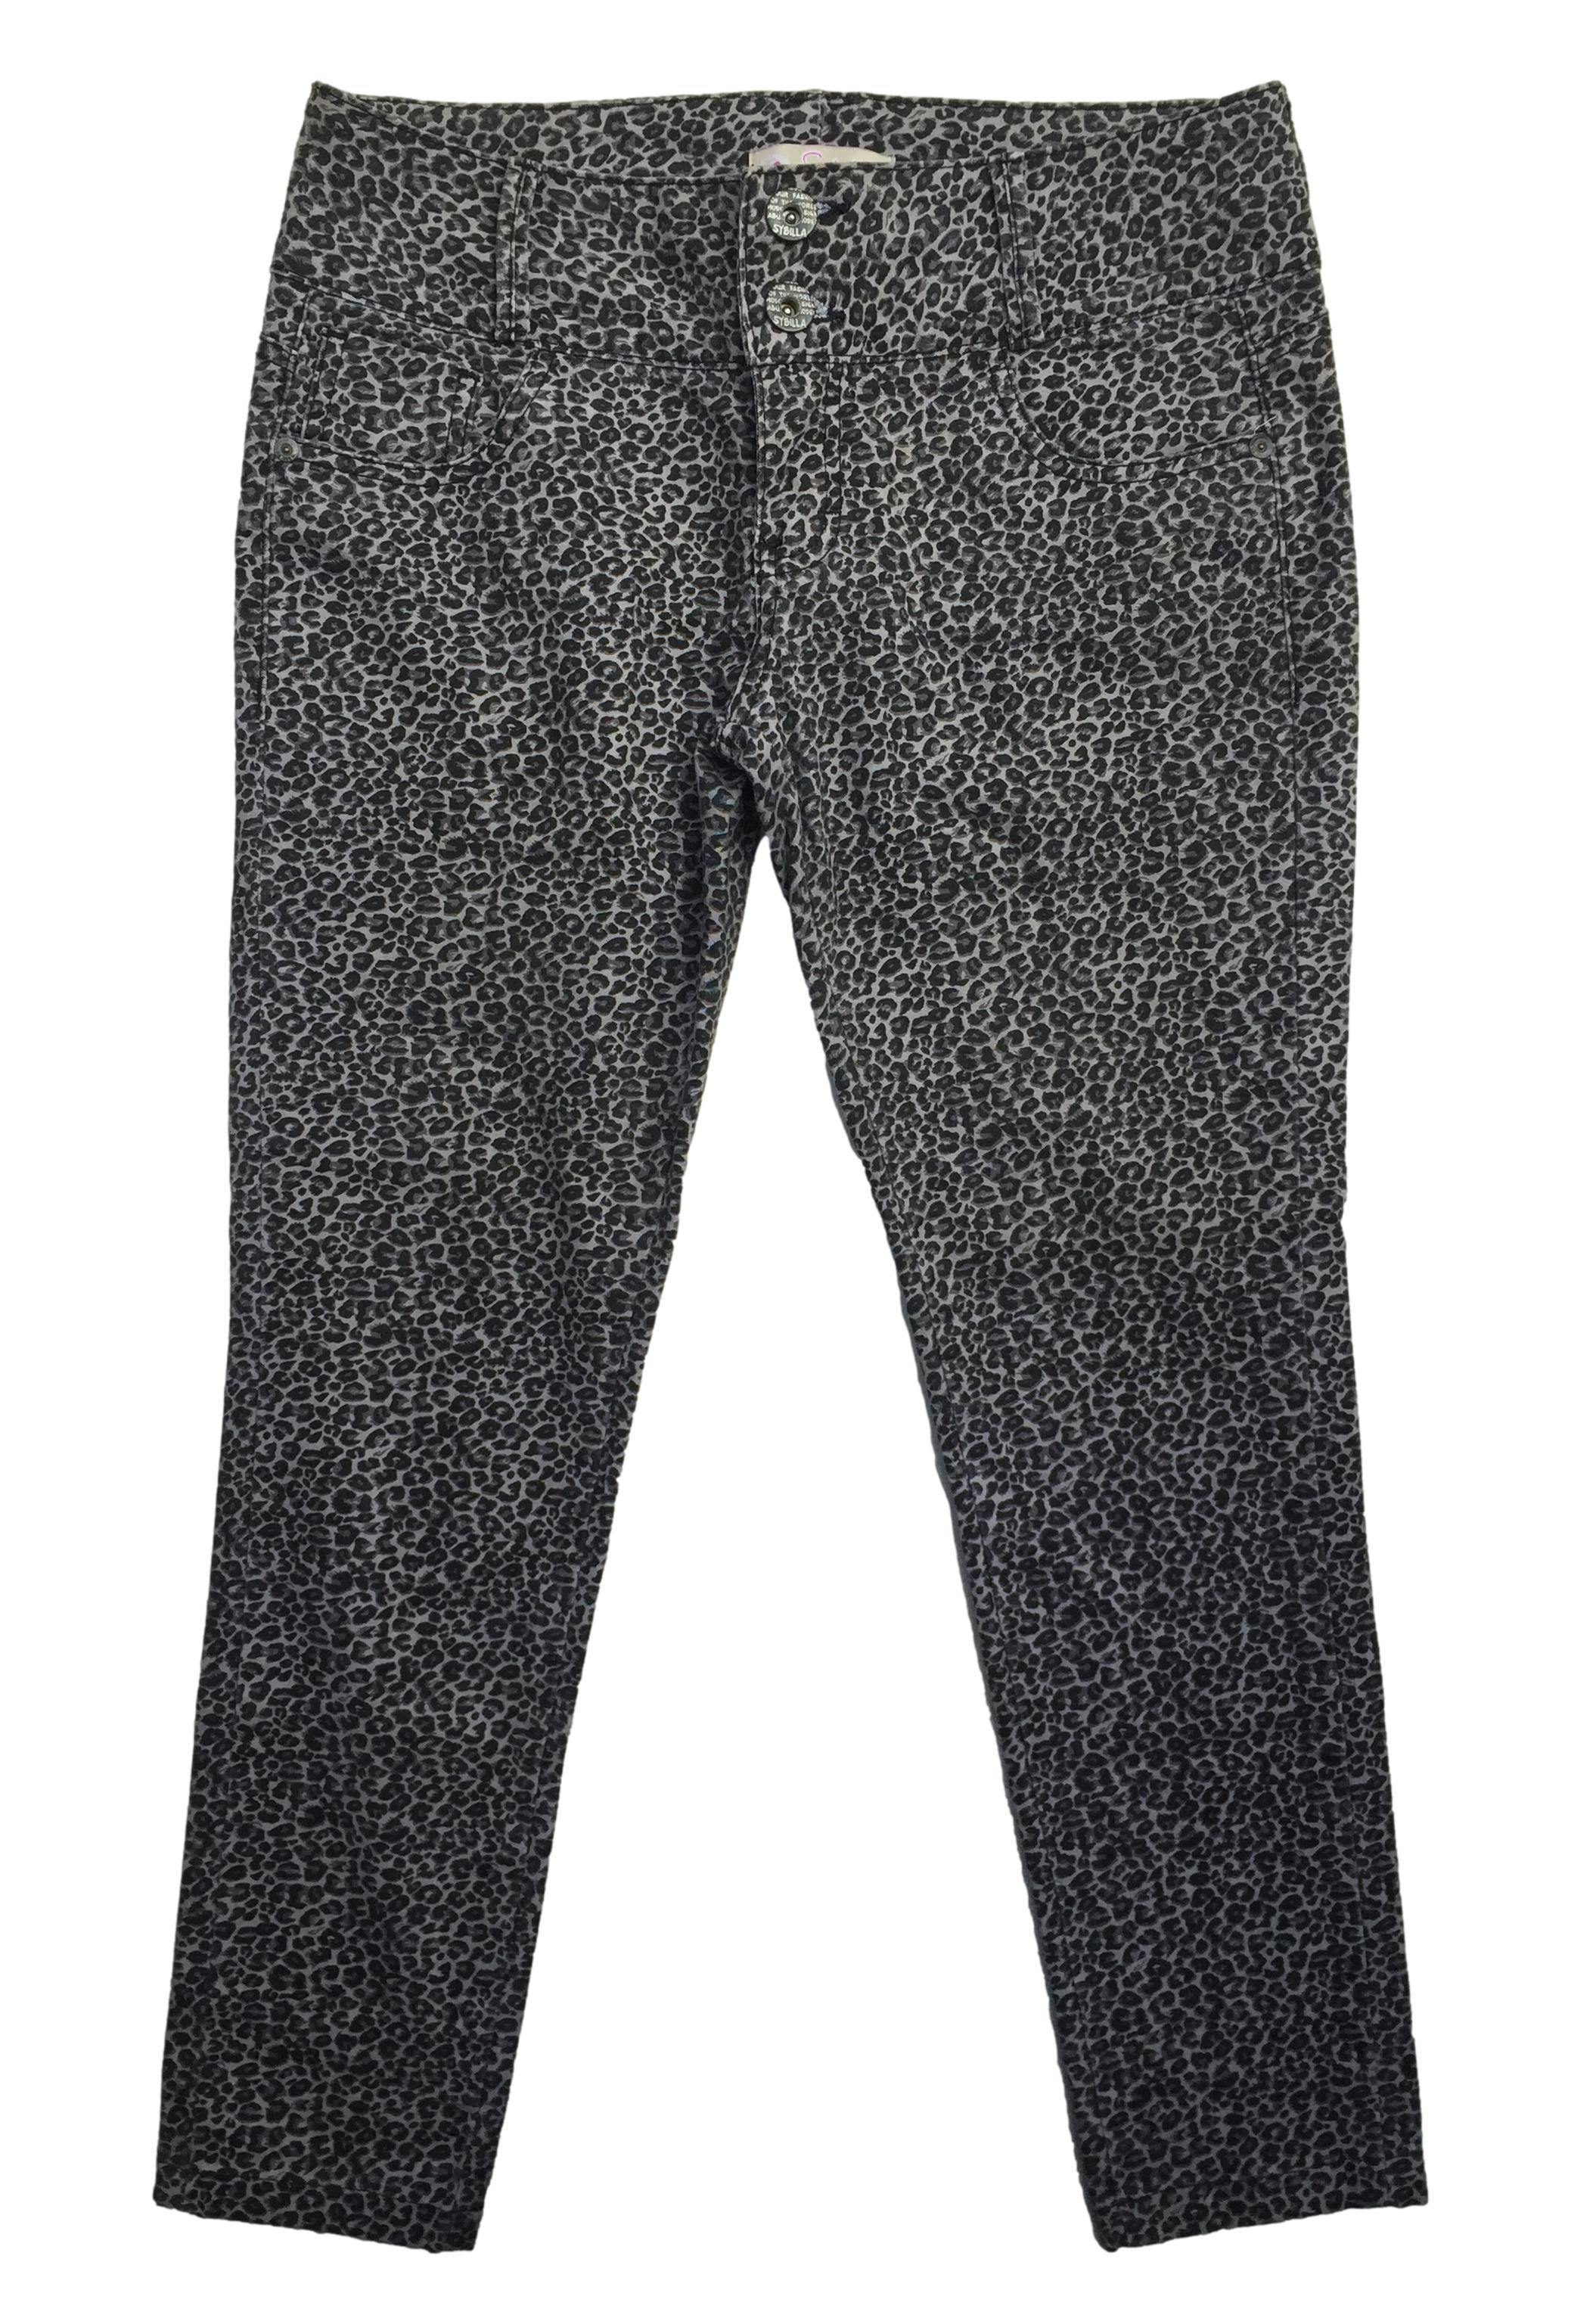 Pantalón Sybilla animal print en tonos grises, dos botones delanteros, pretina ancha. Cintura: 76cm, Tiro: 21cm, Largo: 84cm